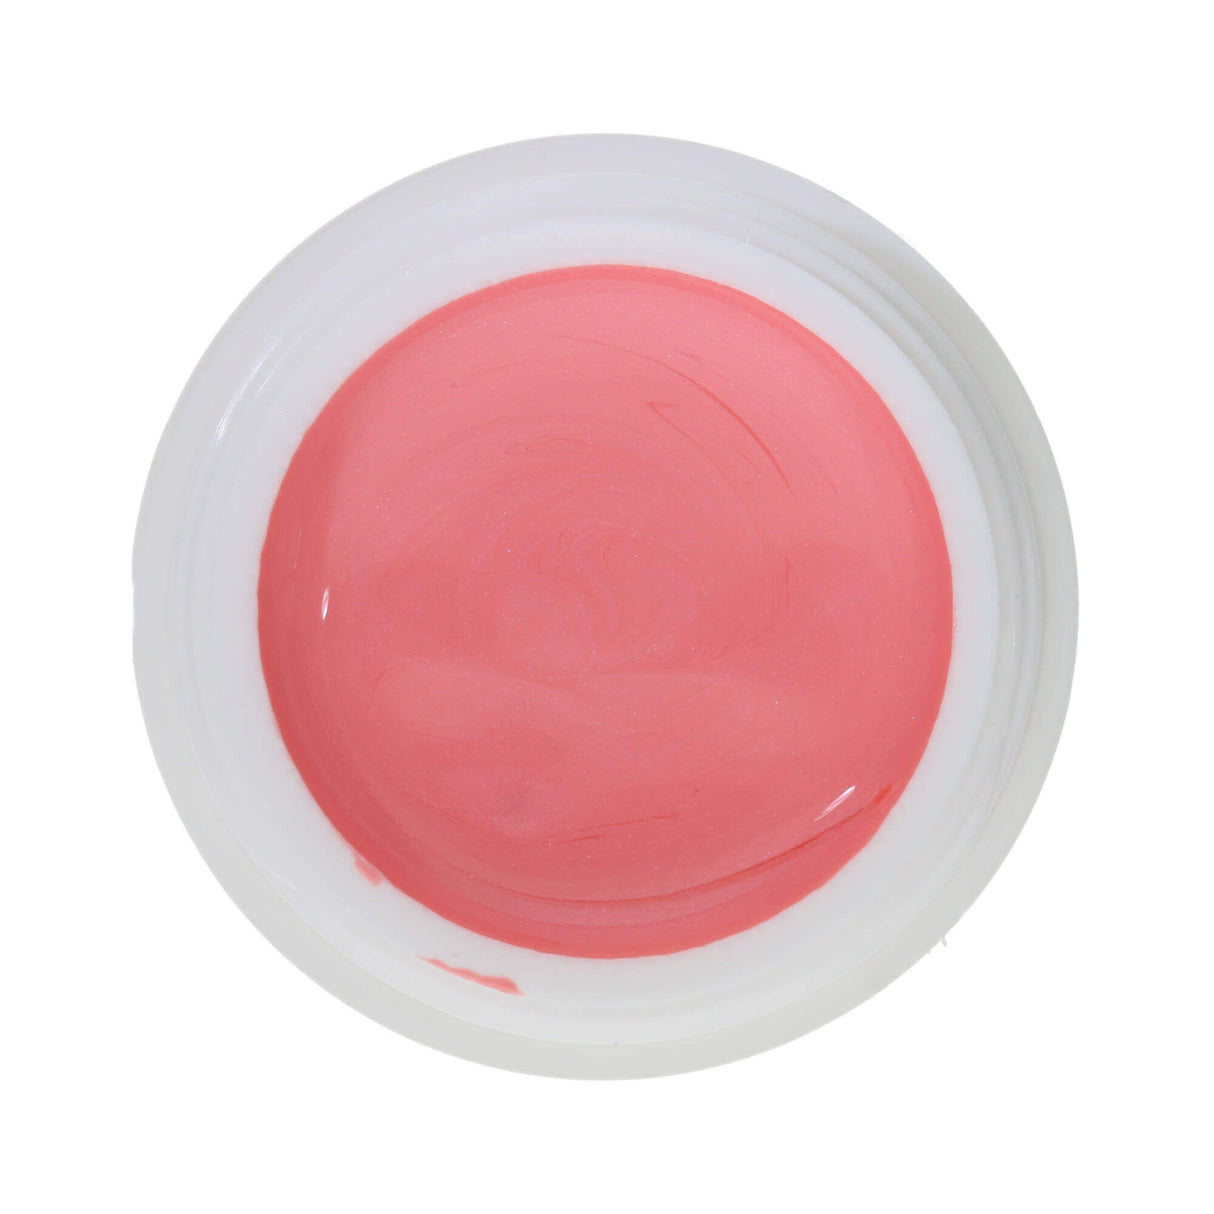 # 335 Premium EFFECT Color Gel 5ml Màu hồng nhạt với hiệu ứng ngọc trai rất tinh tế